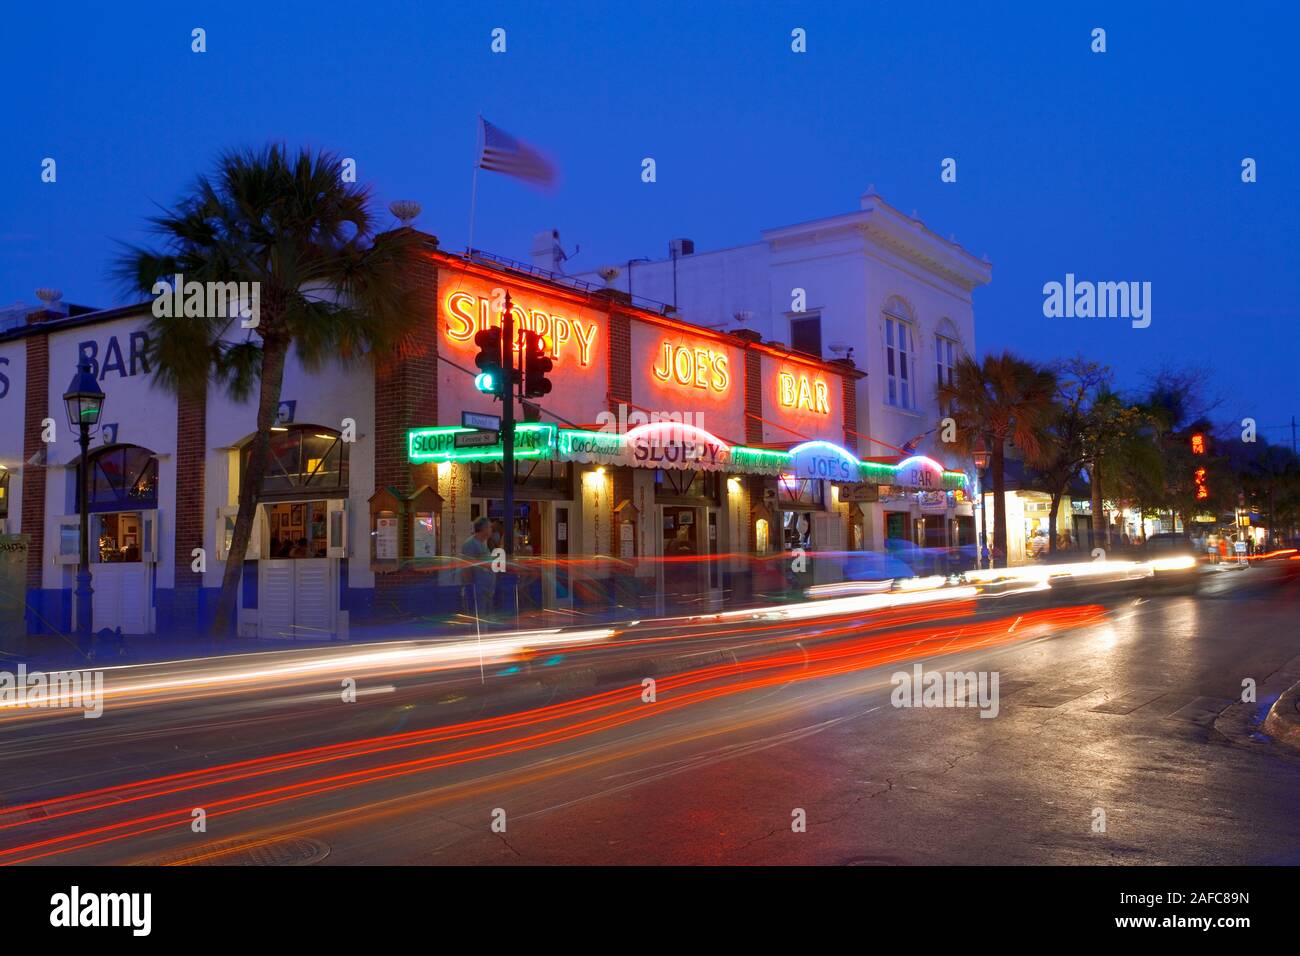 Sloppy Joe's Bar in Key West, Florida, USA. Beliebte bar mit Ernest Hemingway während seiner Zeit in Key West, Florida. Stockfoto